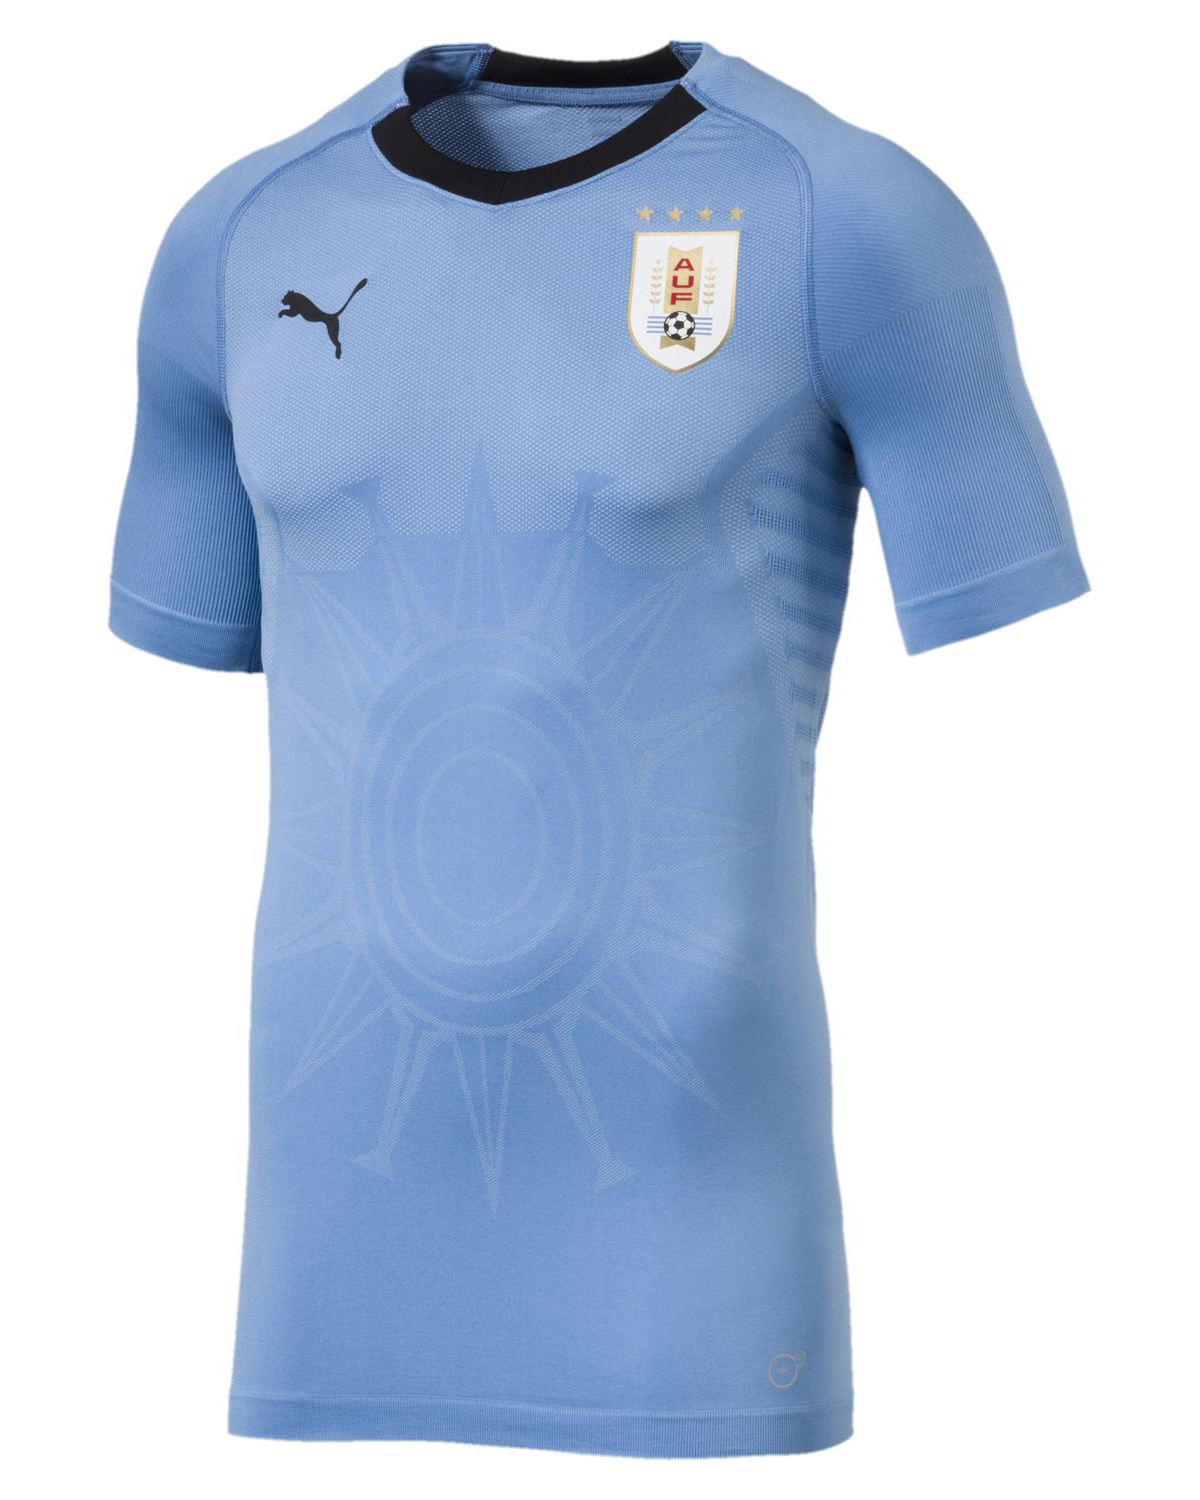 Camiseta PUMA de Uruguay Mundial 2018